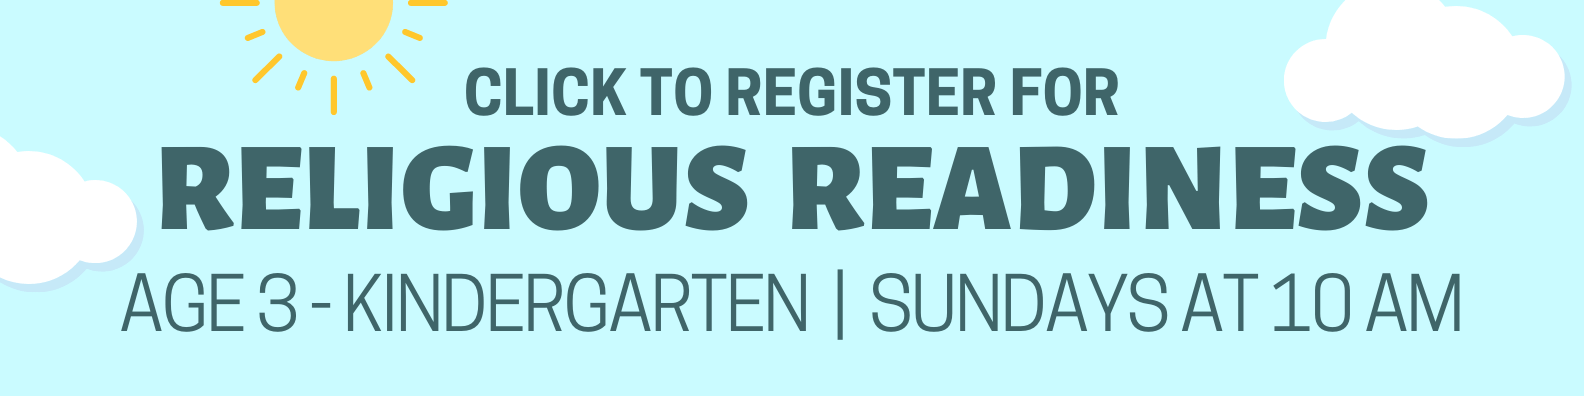 Register for Religious Readiness